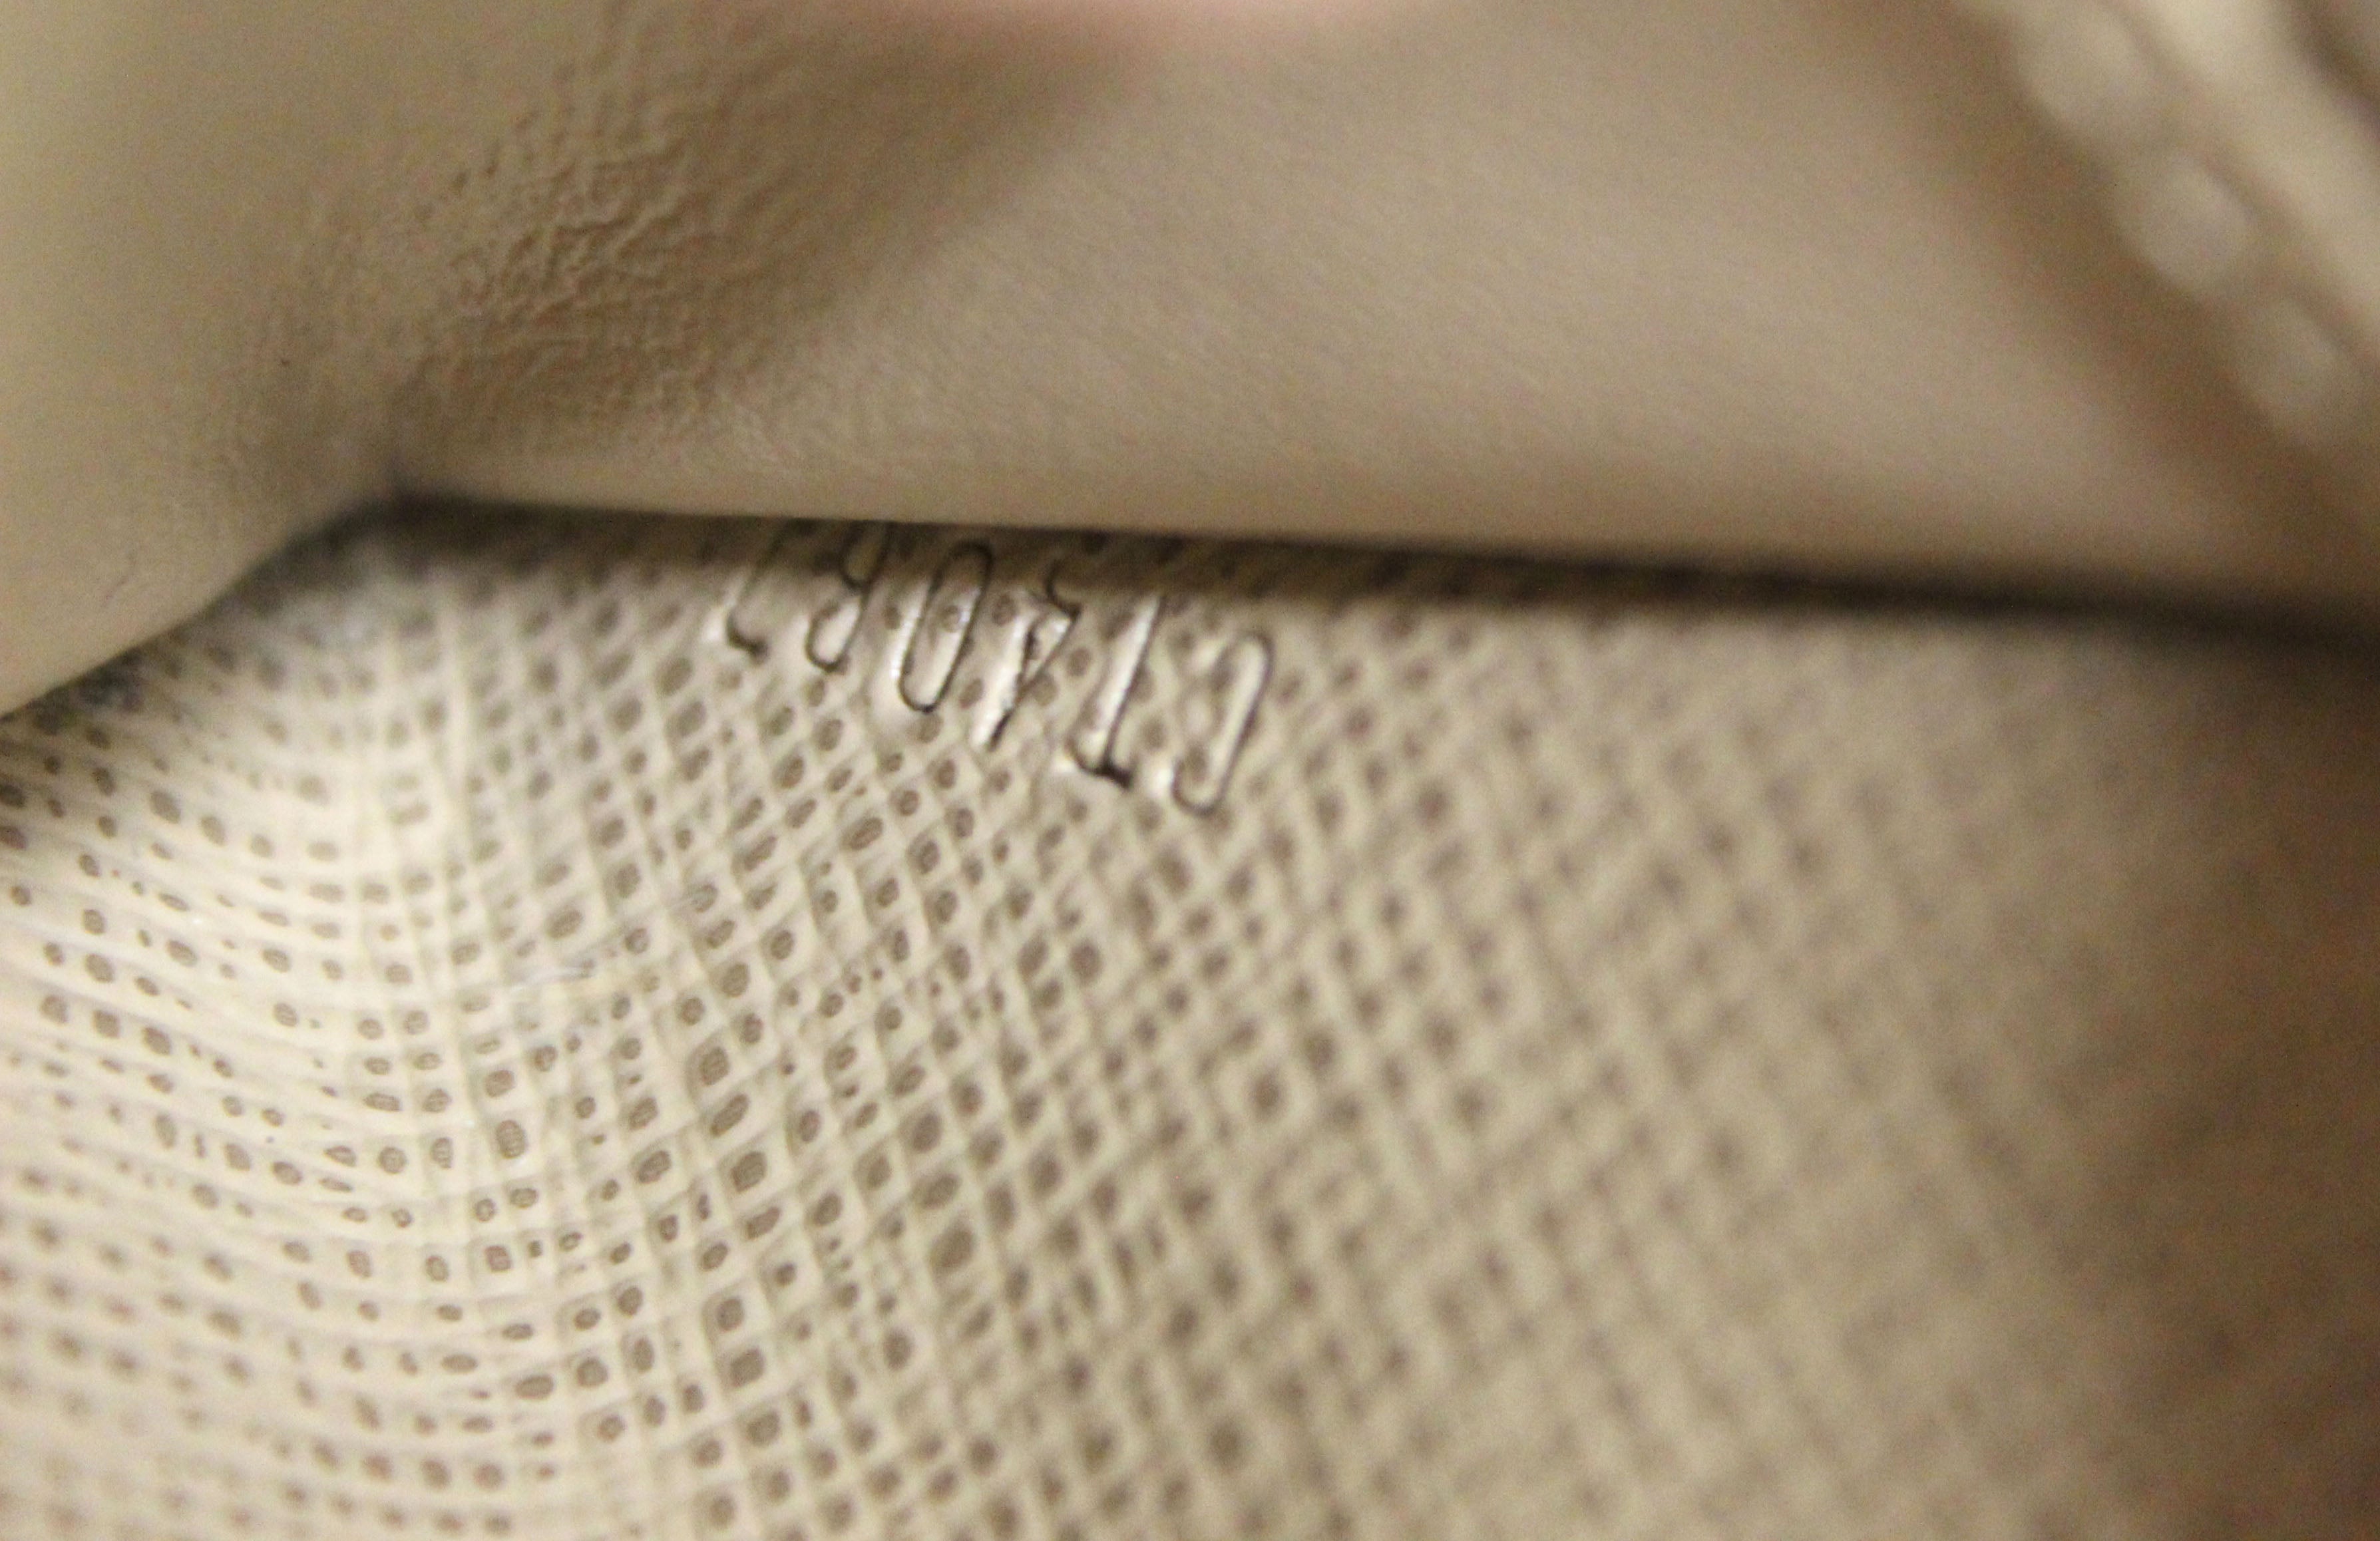 Authentic Louis Vuitton Monogram Canvas Trunks & Bags Key Pouch